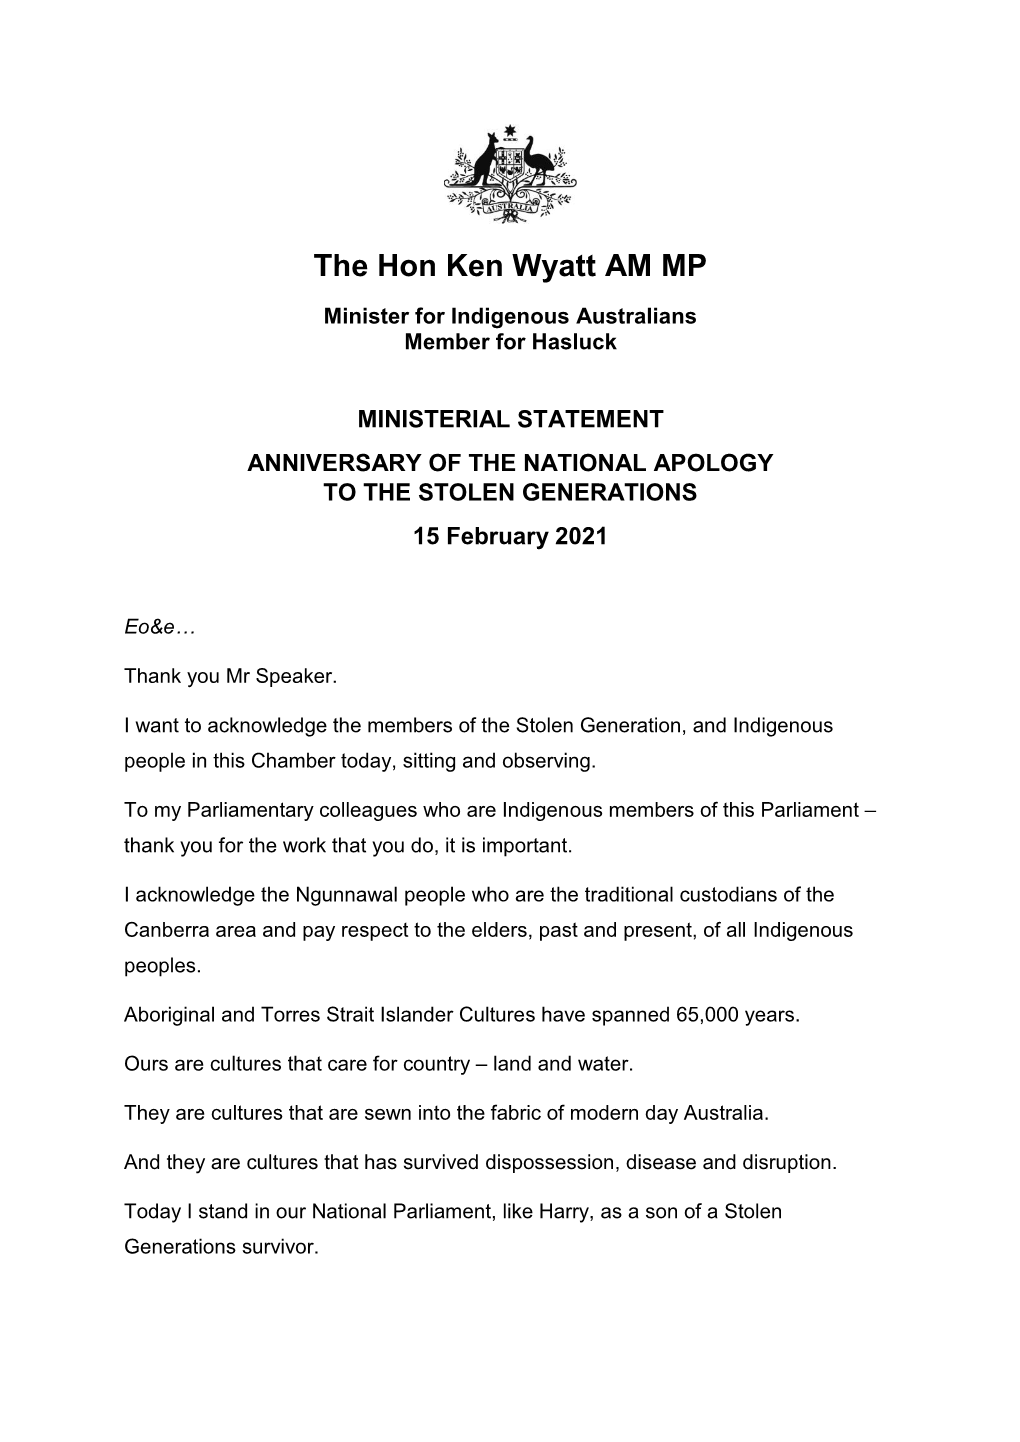 The Hon Ken Wyatt AM MP